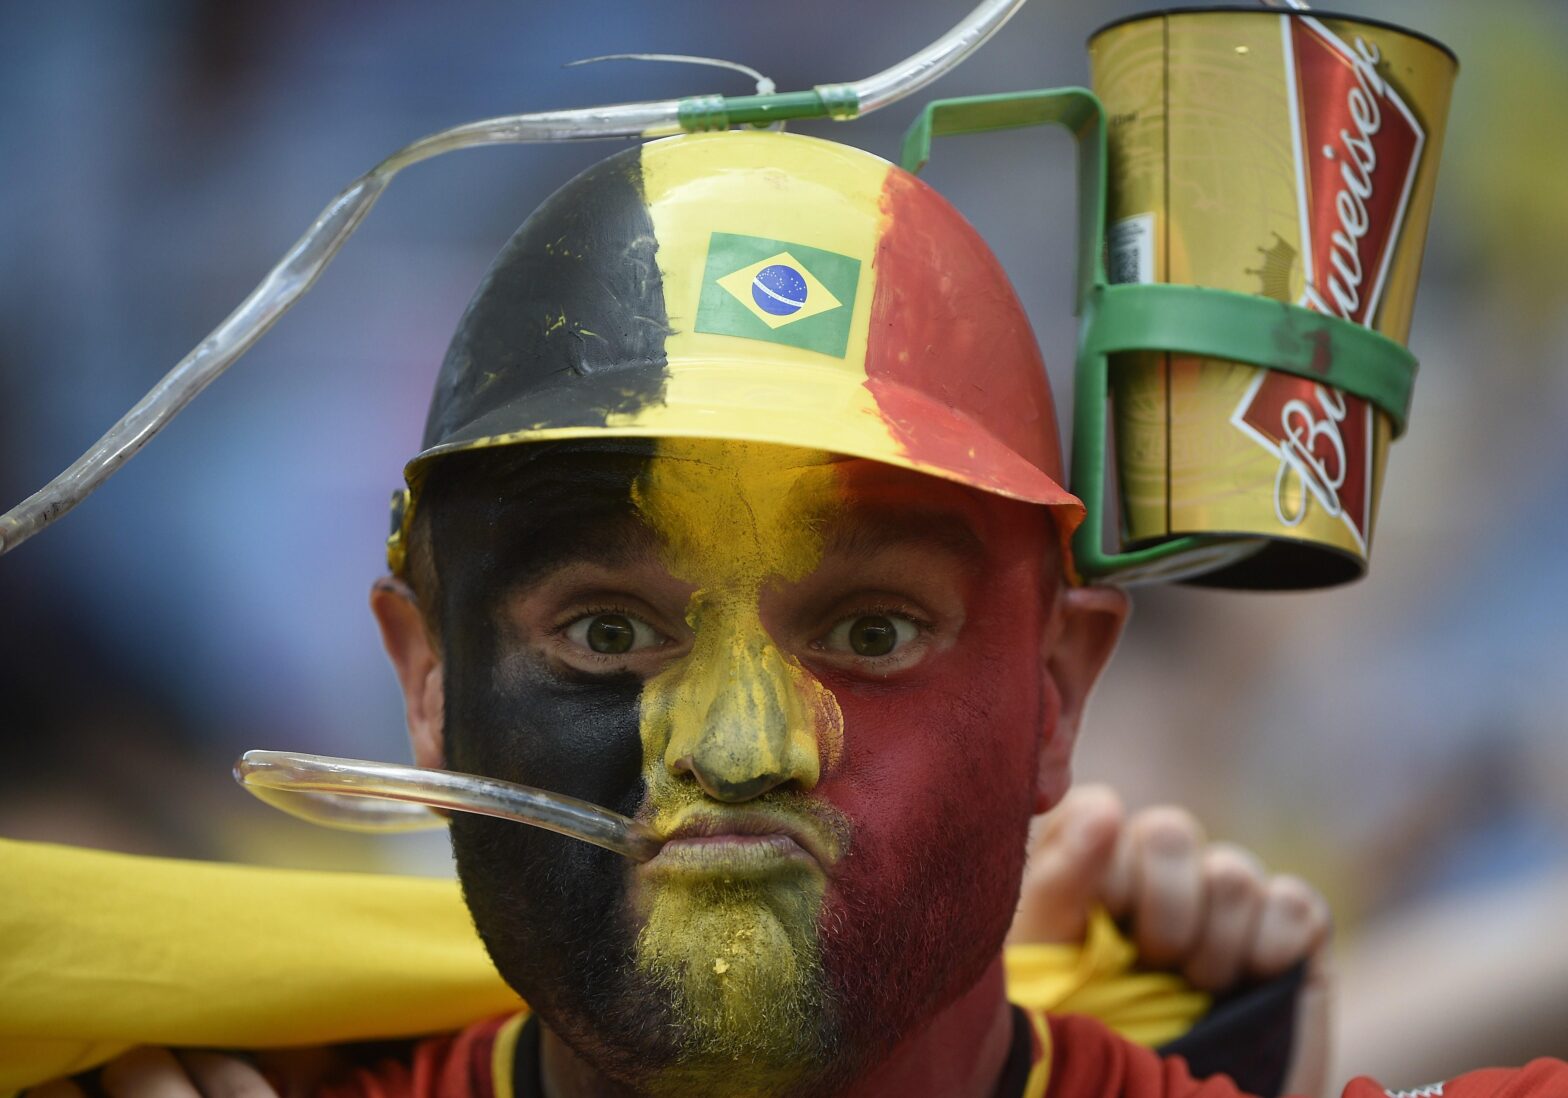 world cup fan drinking a Bud